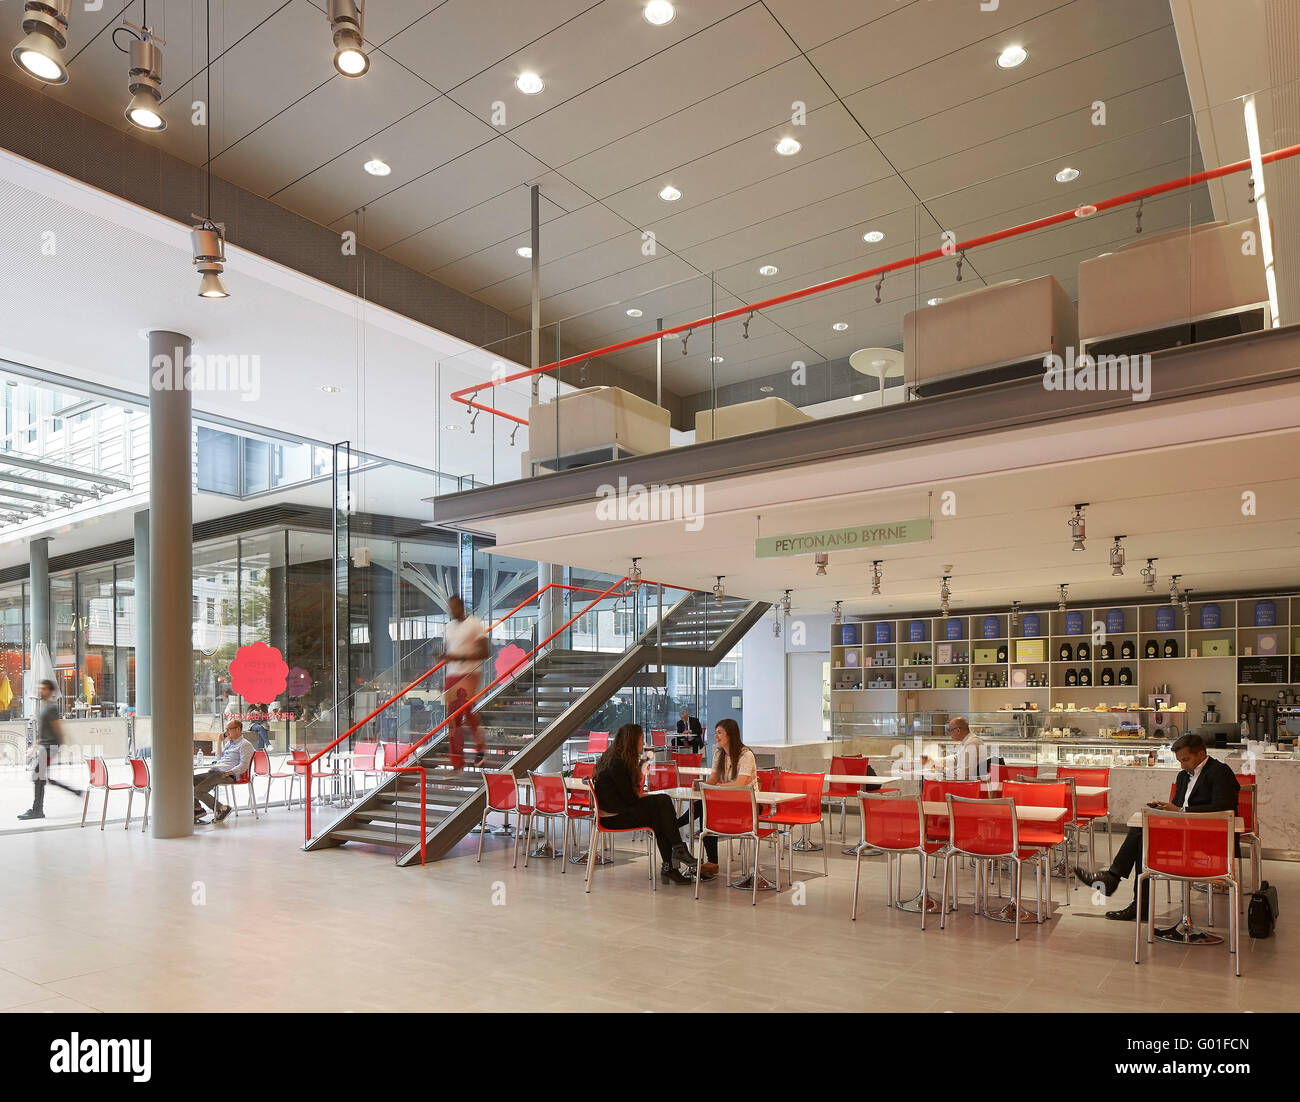 Restaurant au rez-de-chaussée avec mezzanine. Central Saint Giles, London, Royaume-Uni. Architecte : Renzo Piano Building Workshop, 2015. Banque D'Images